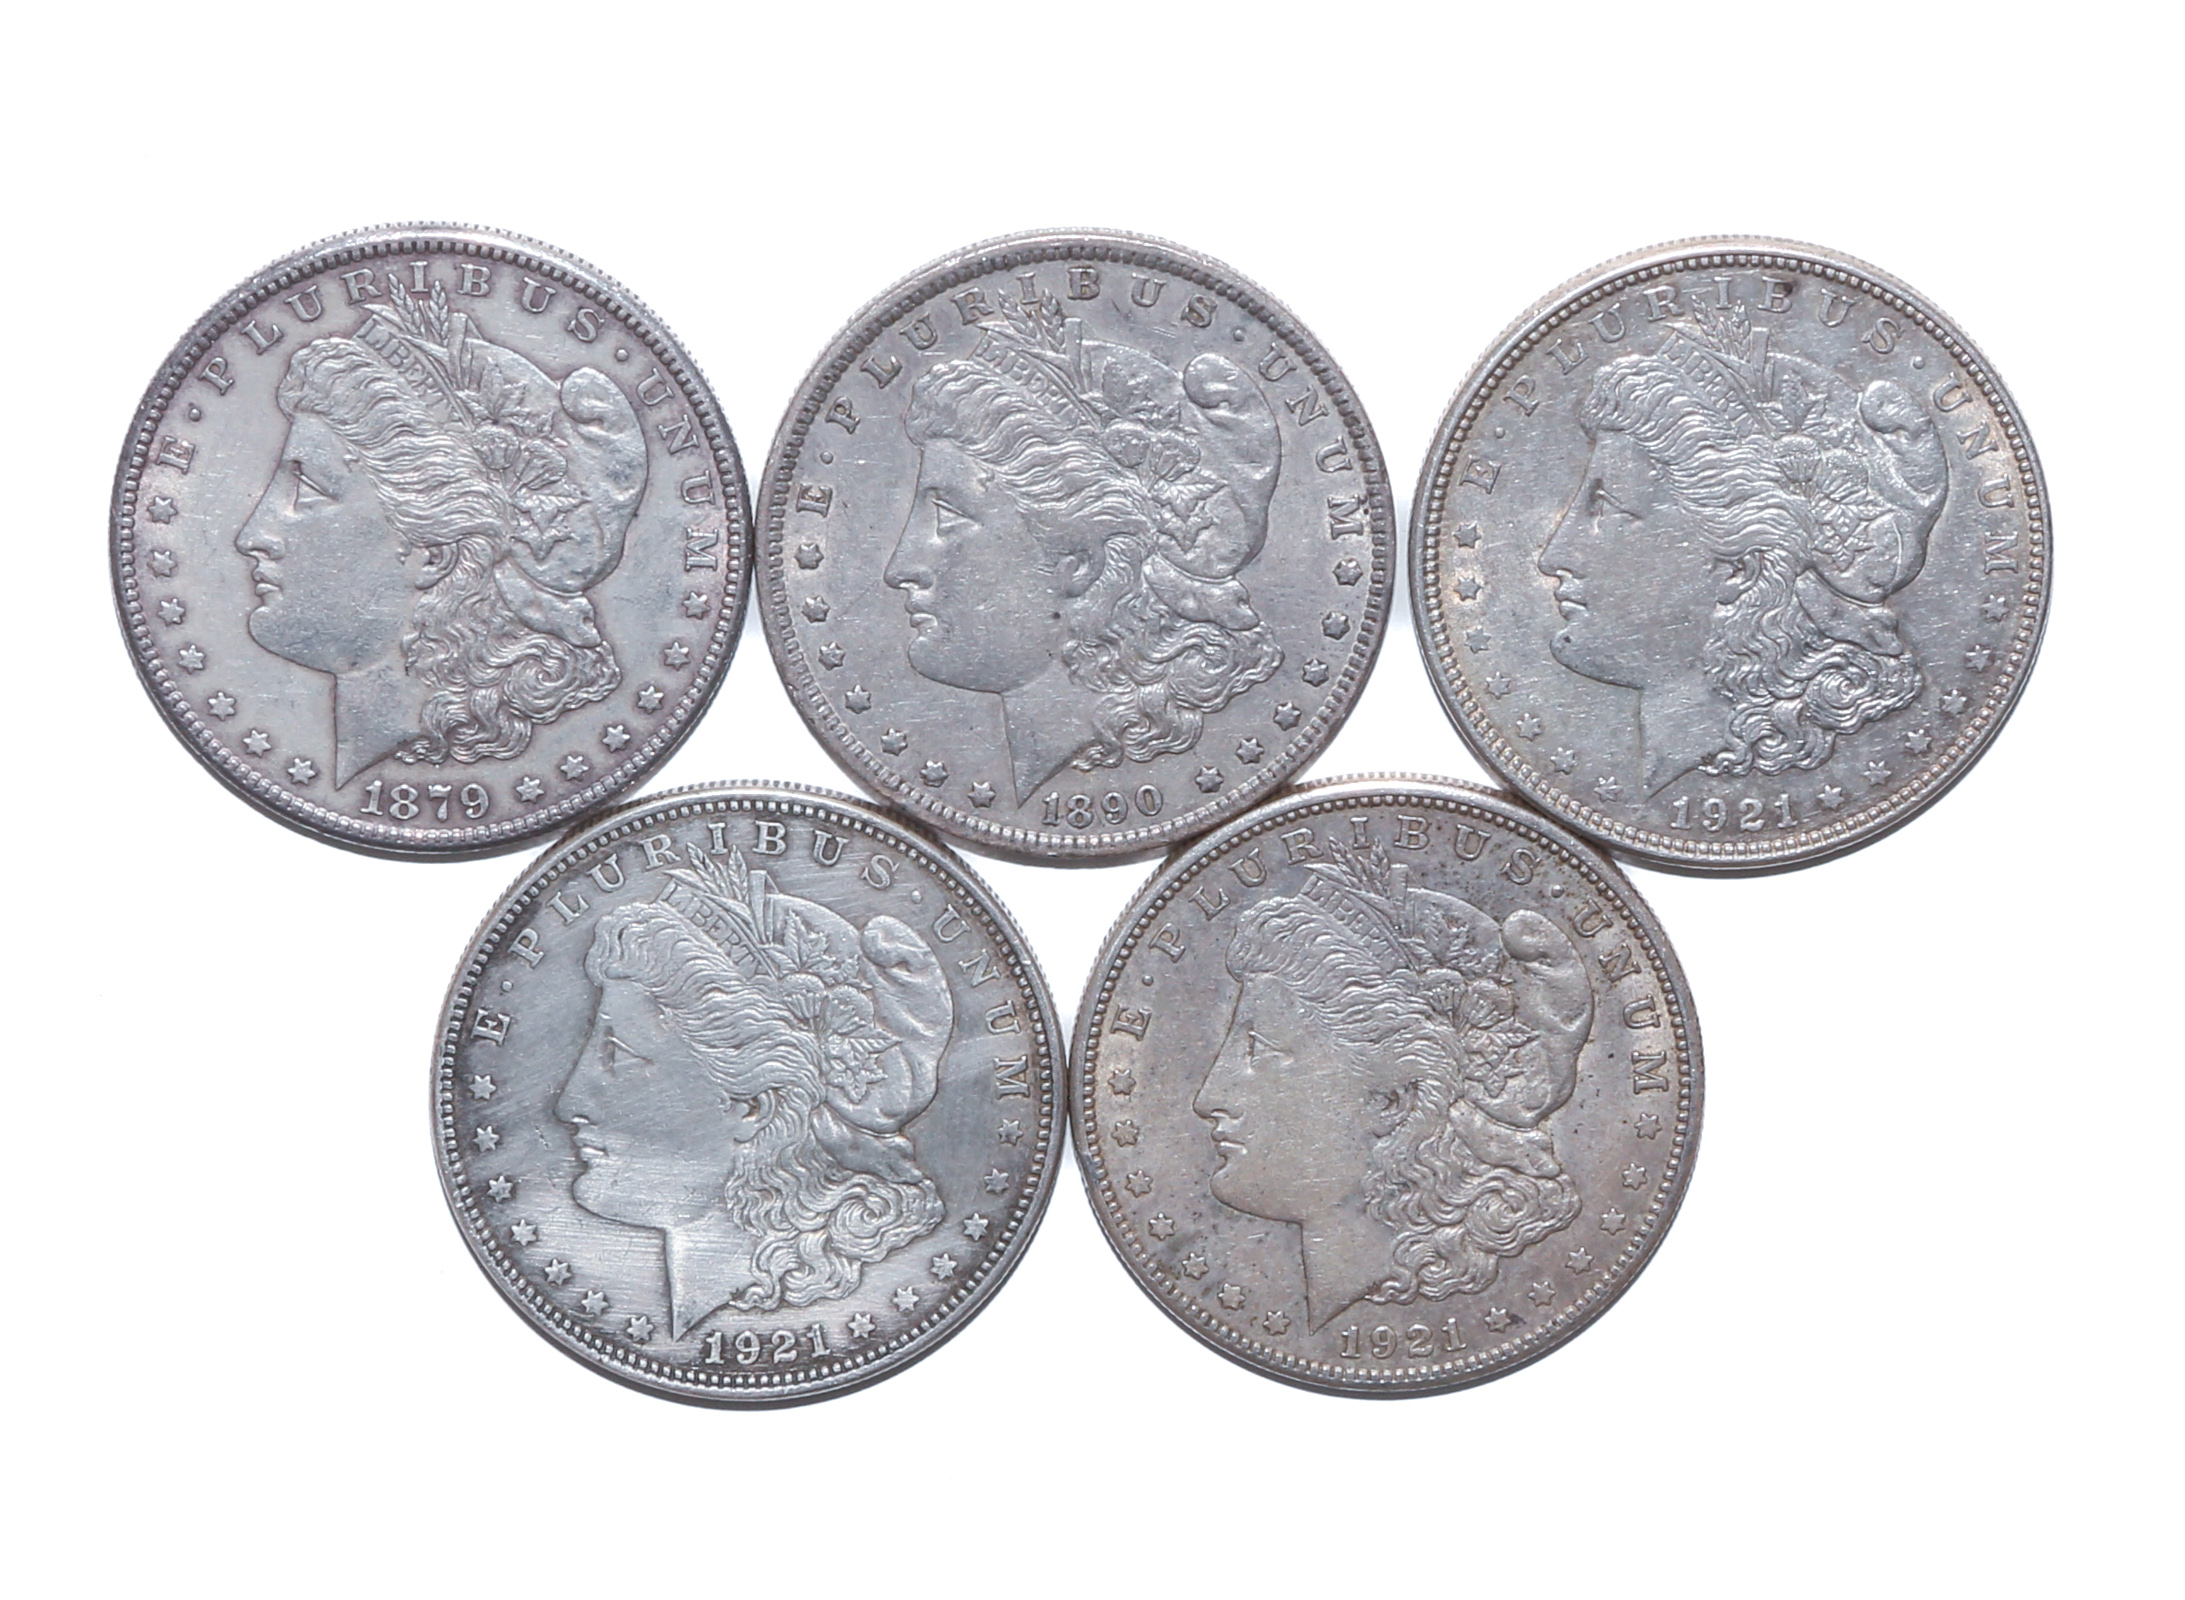 FIVE MORGAN SILVER DOLLARS 1879 S 2e9c5e